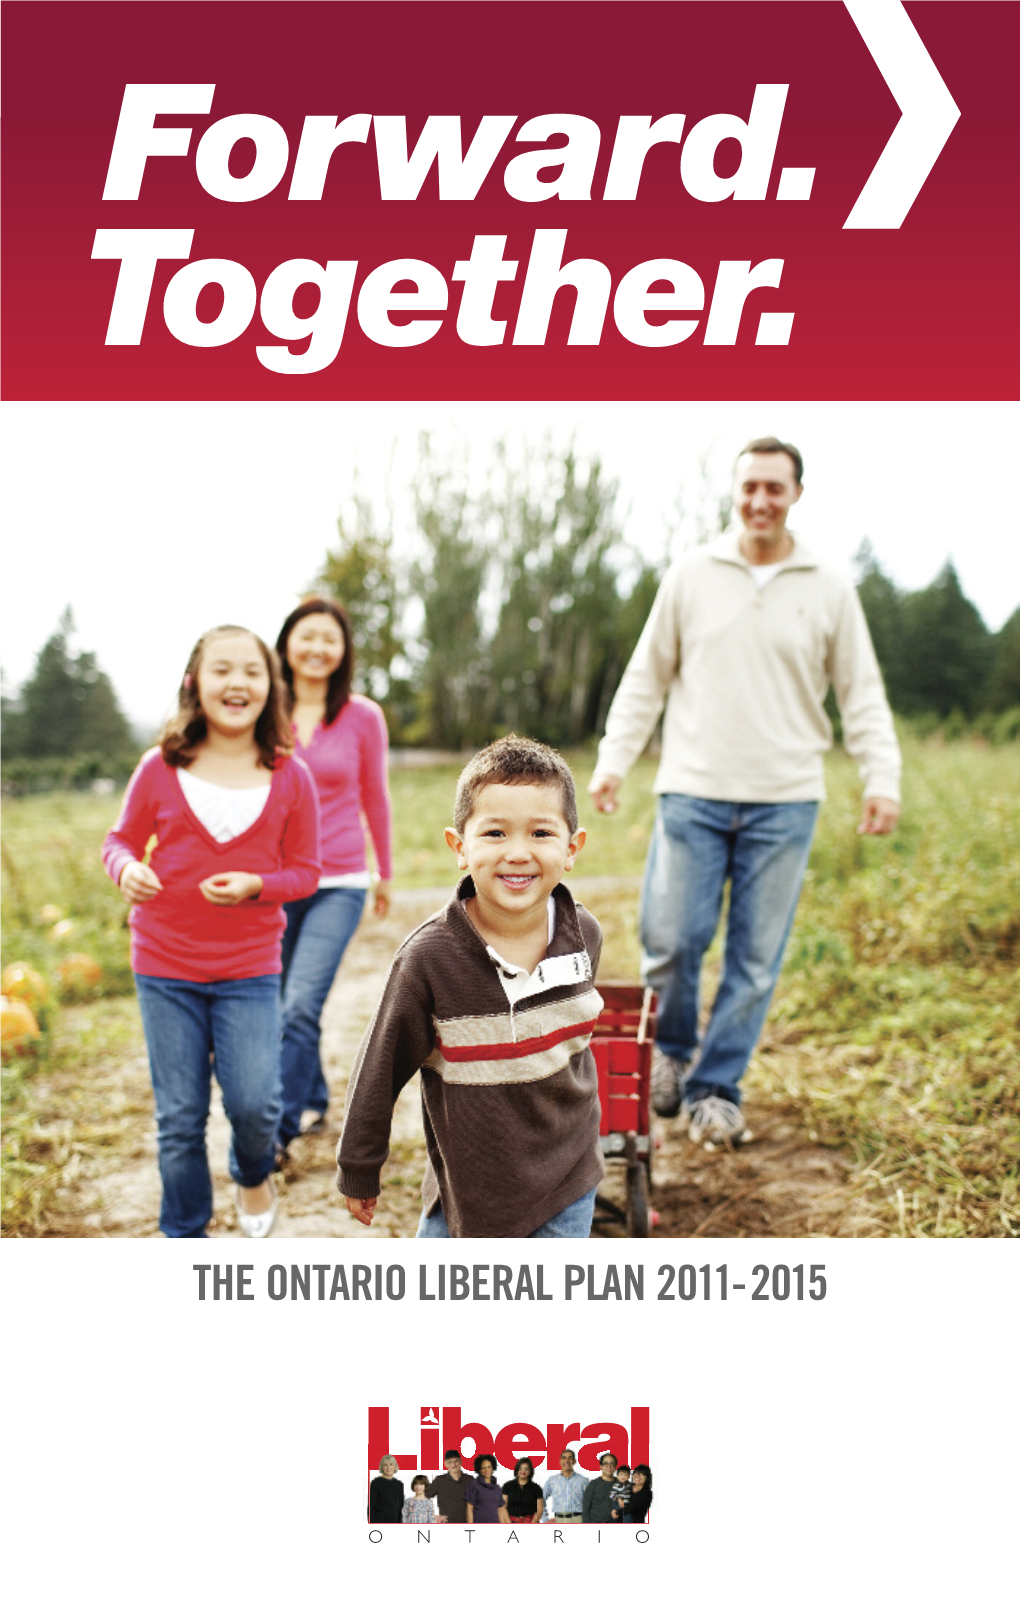 The Ontario Liberal Plan 2011-2015